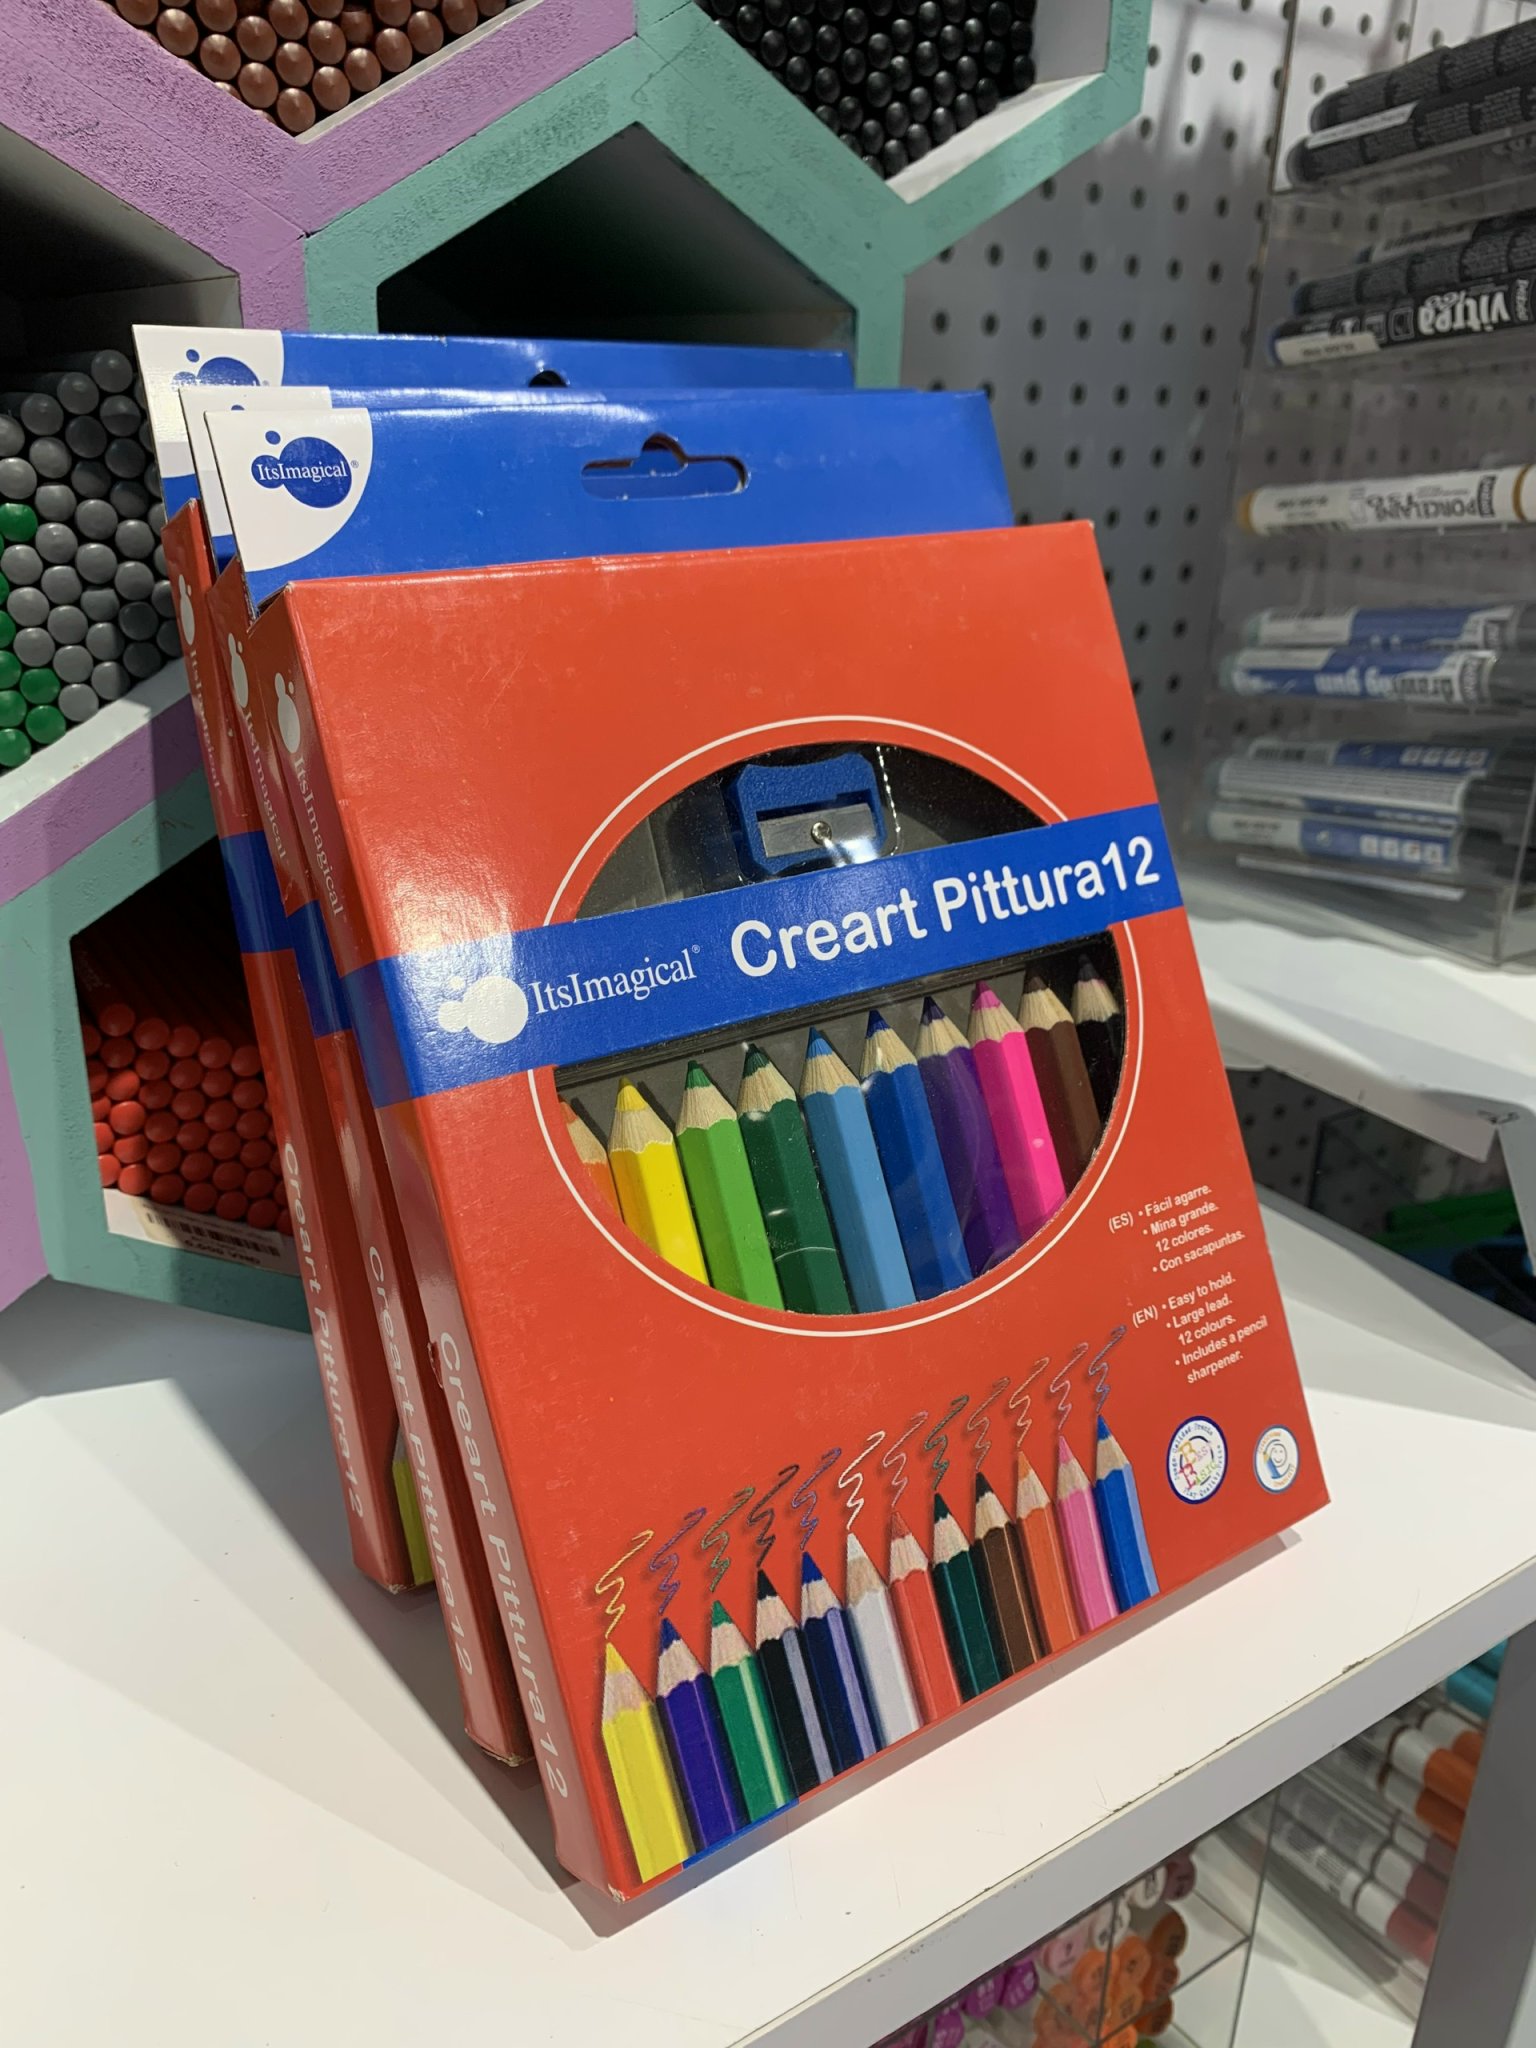 Hộp Chì Màu Creart Pittura, bút chì màu cho bé - HCMCP12